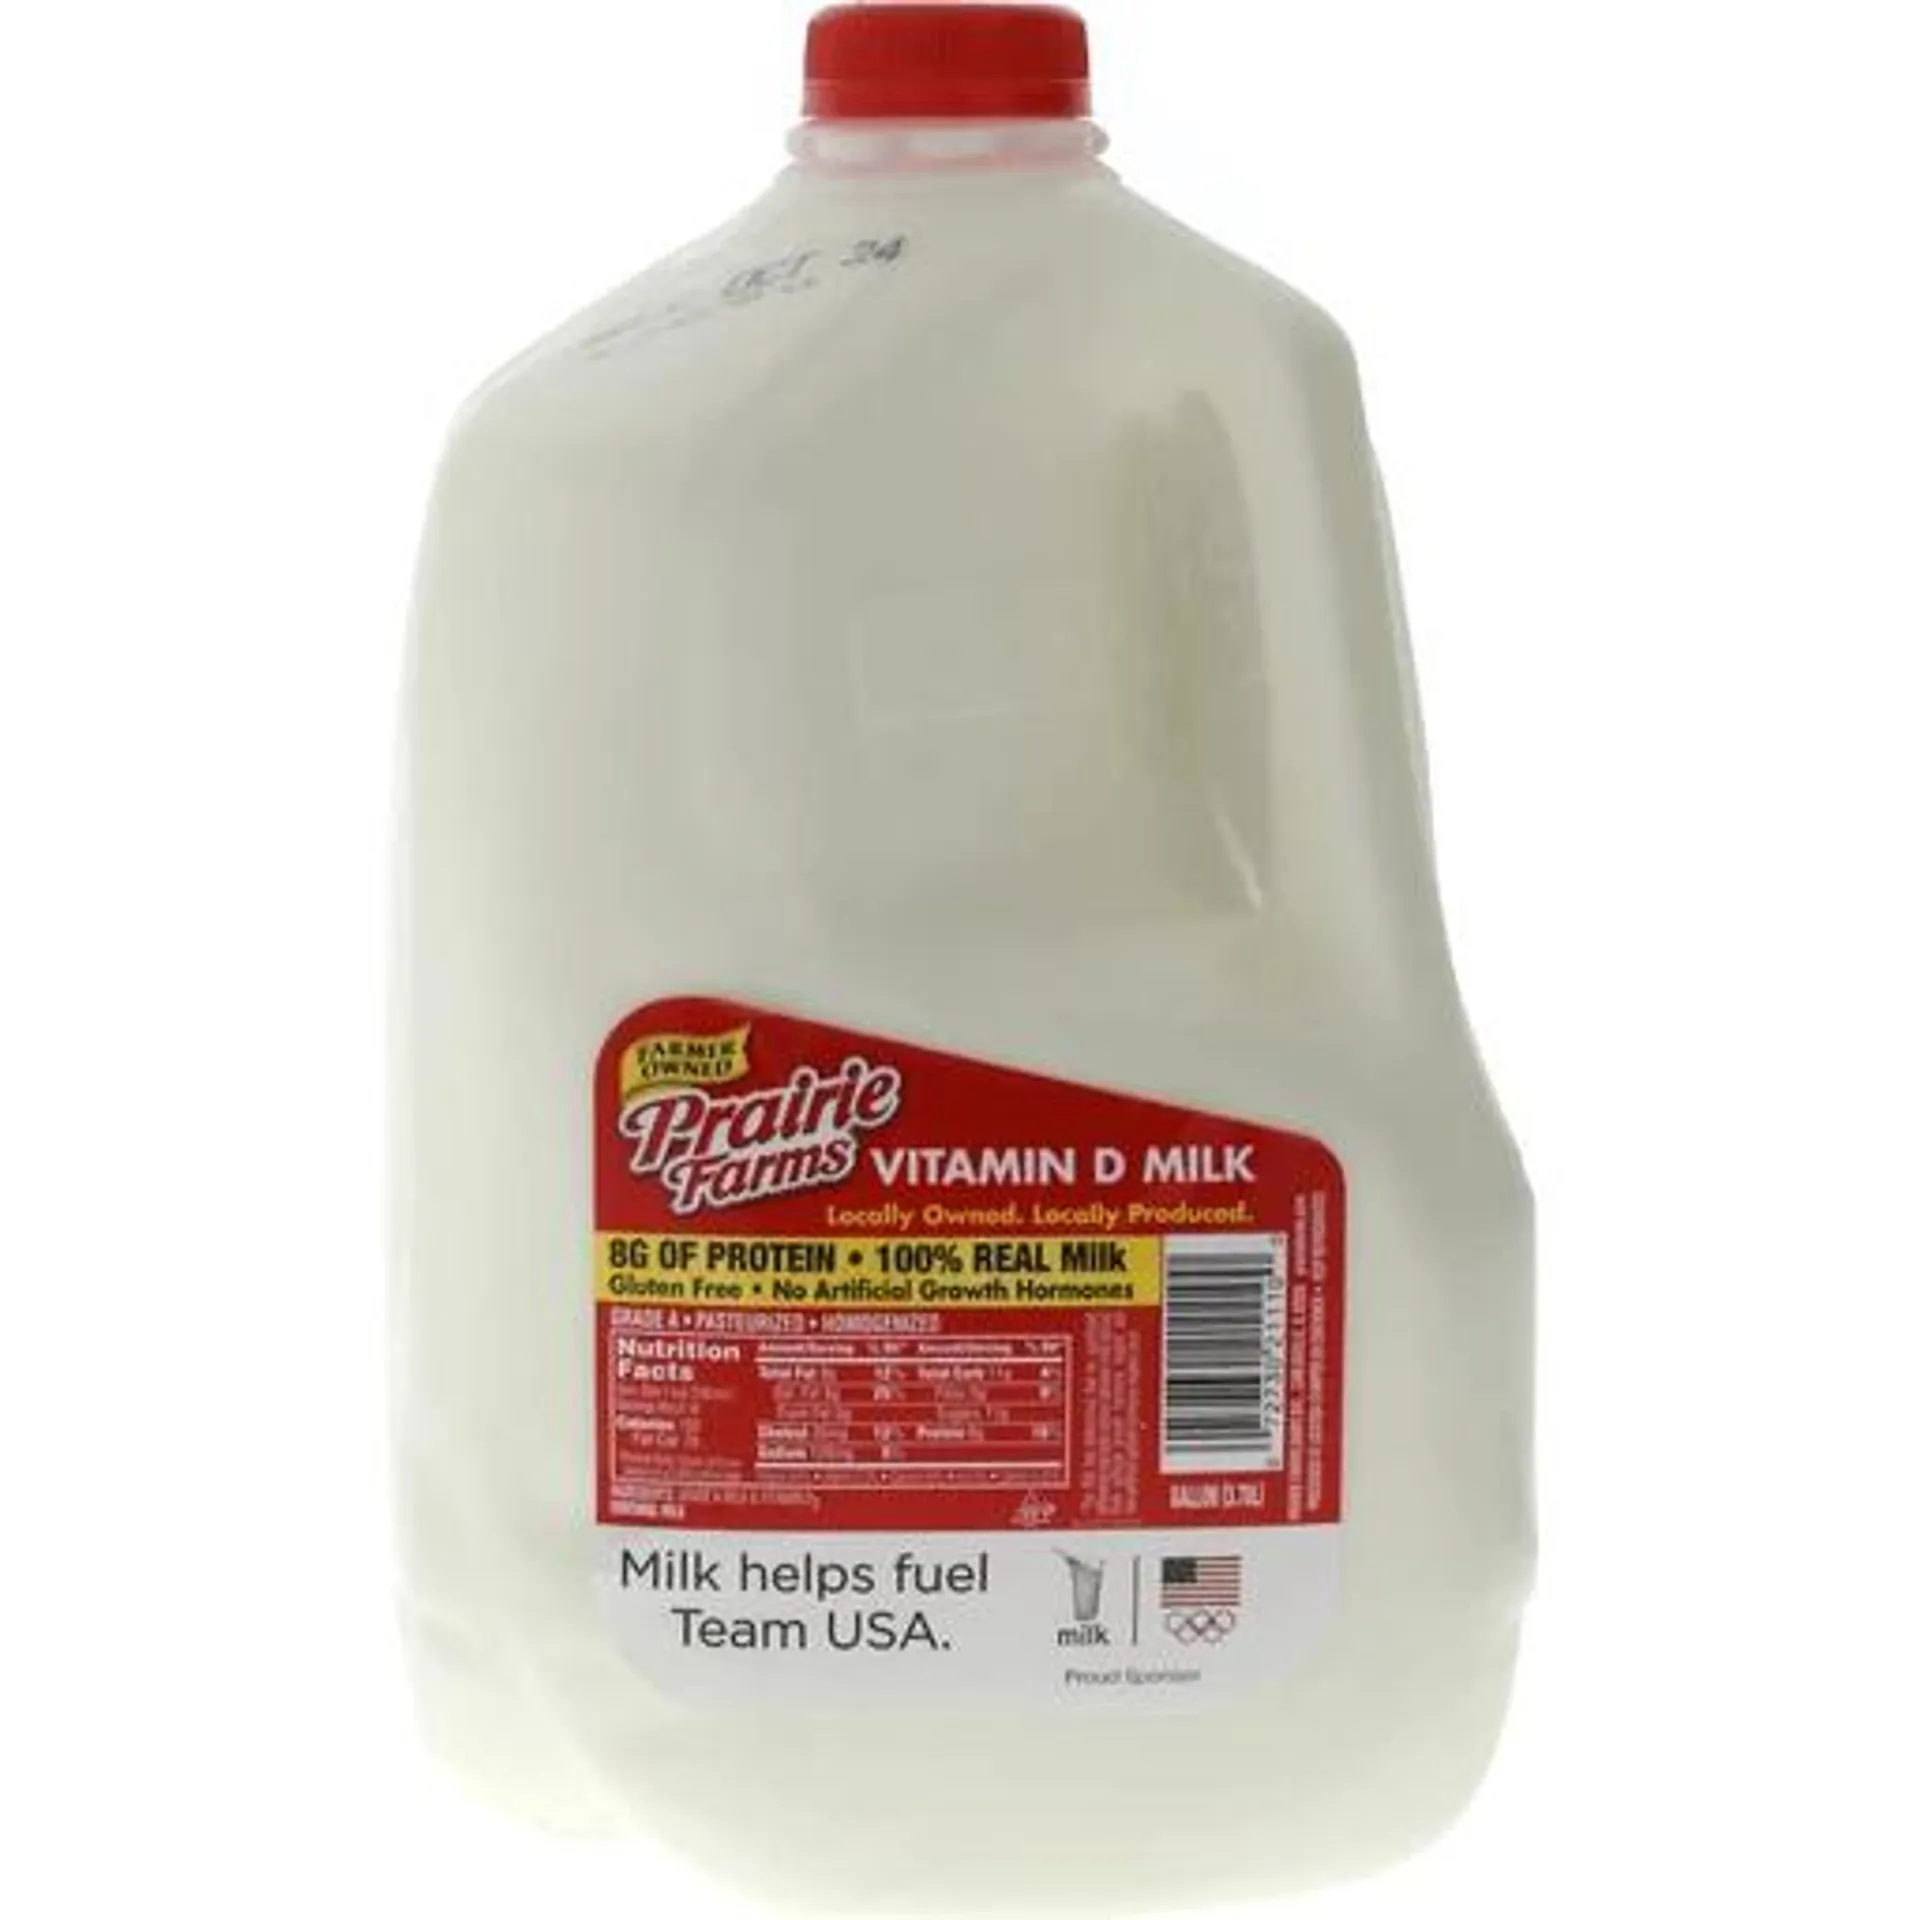 Prairie Farms Whole Milk 1 gl Jug